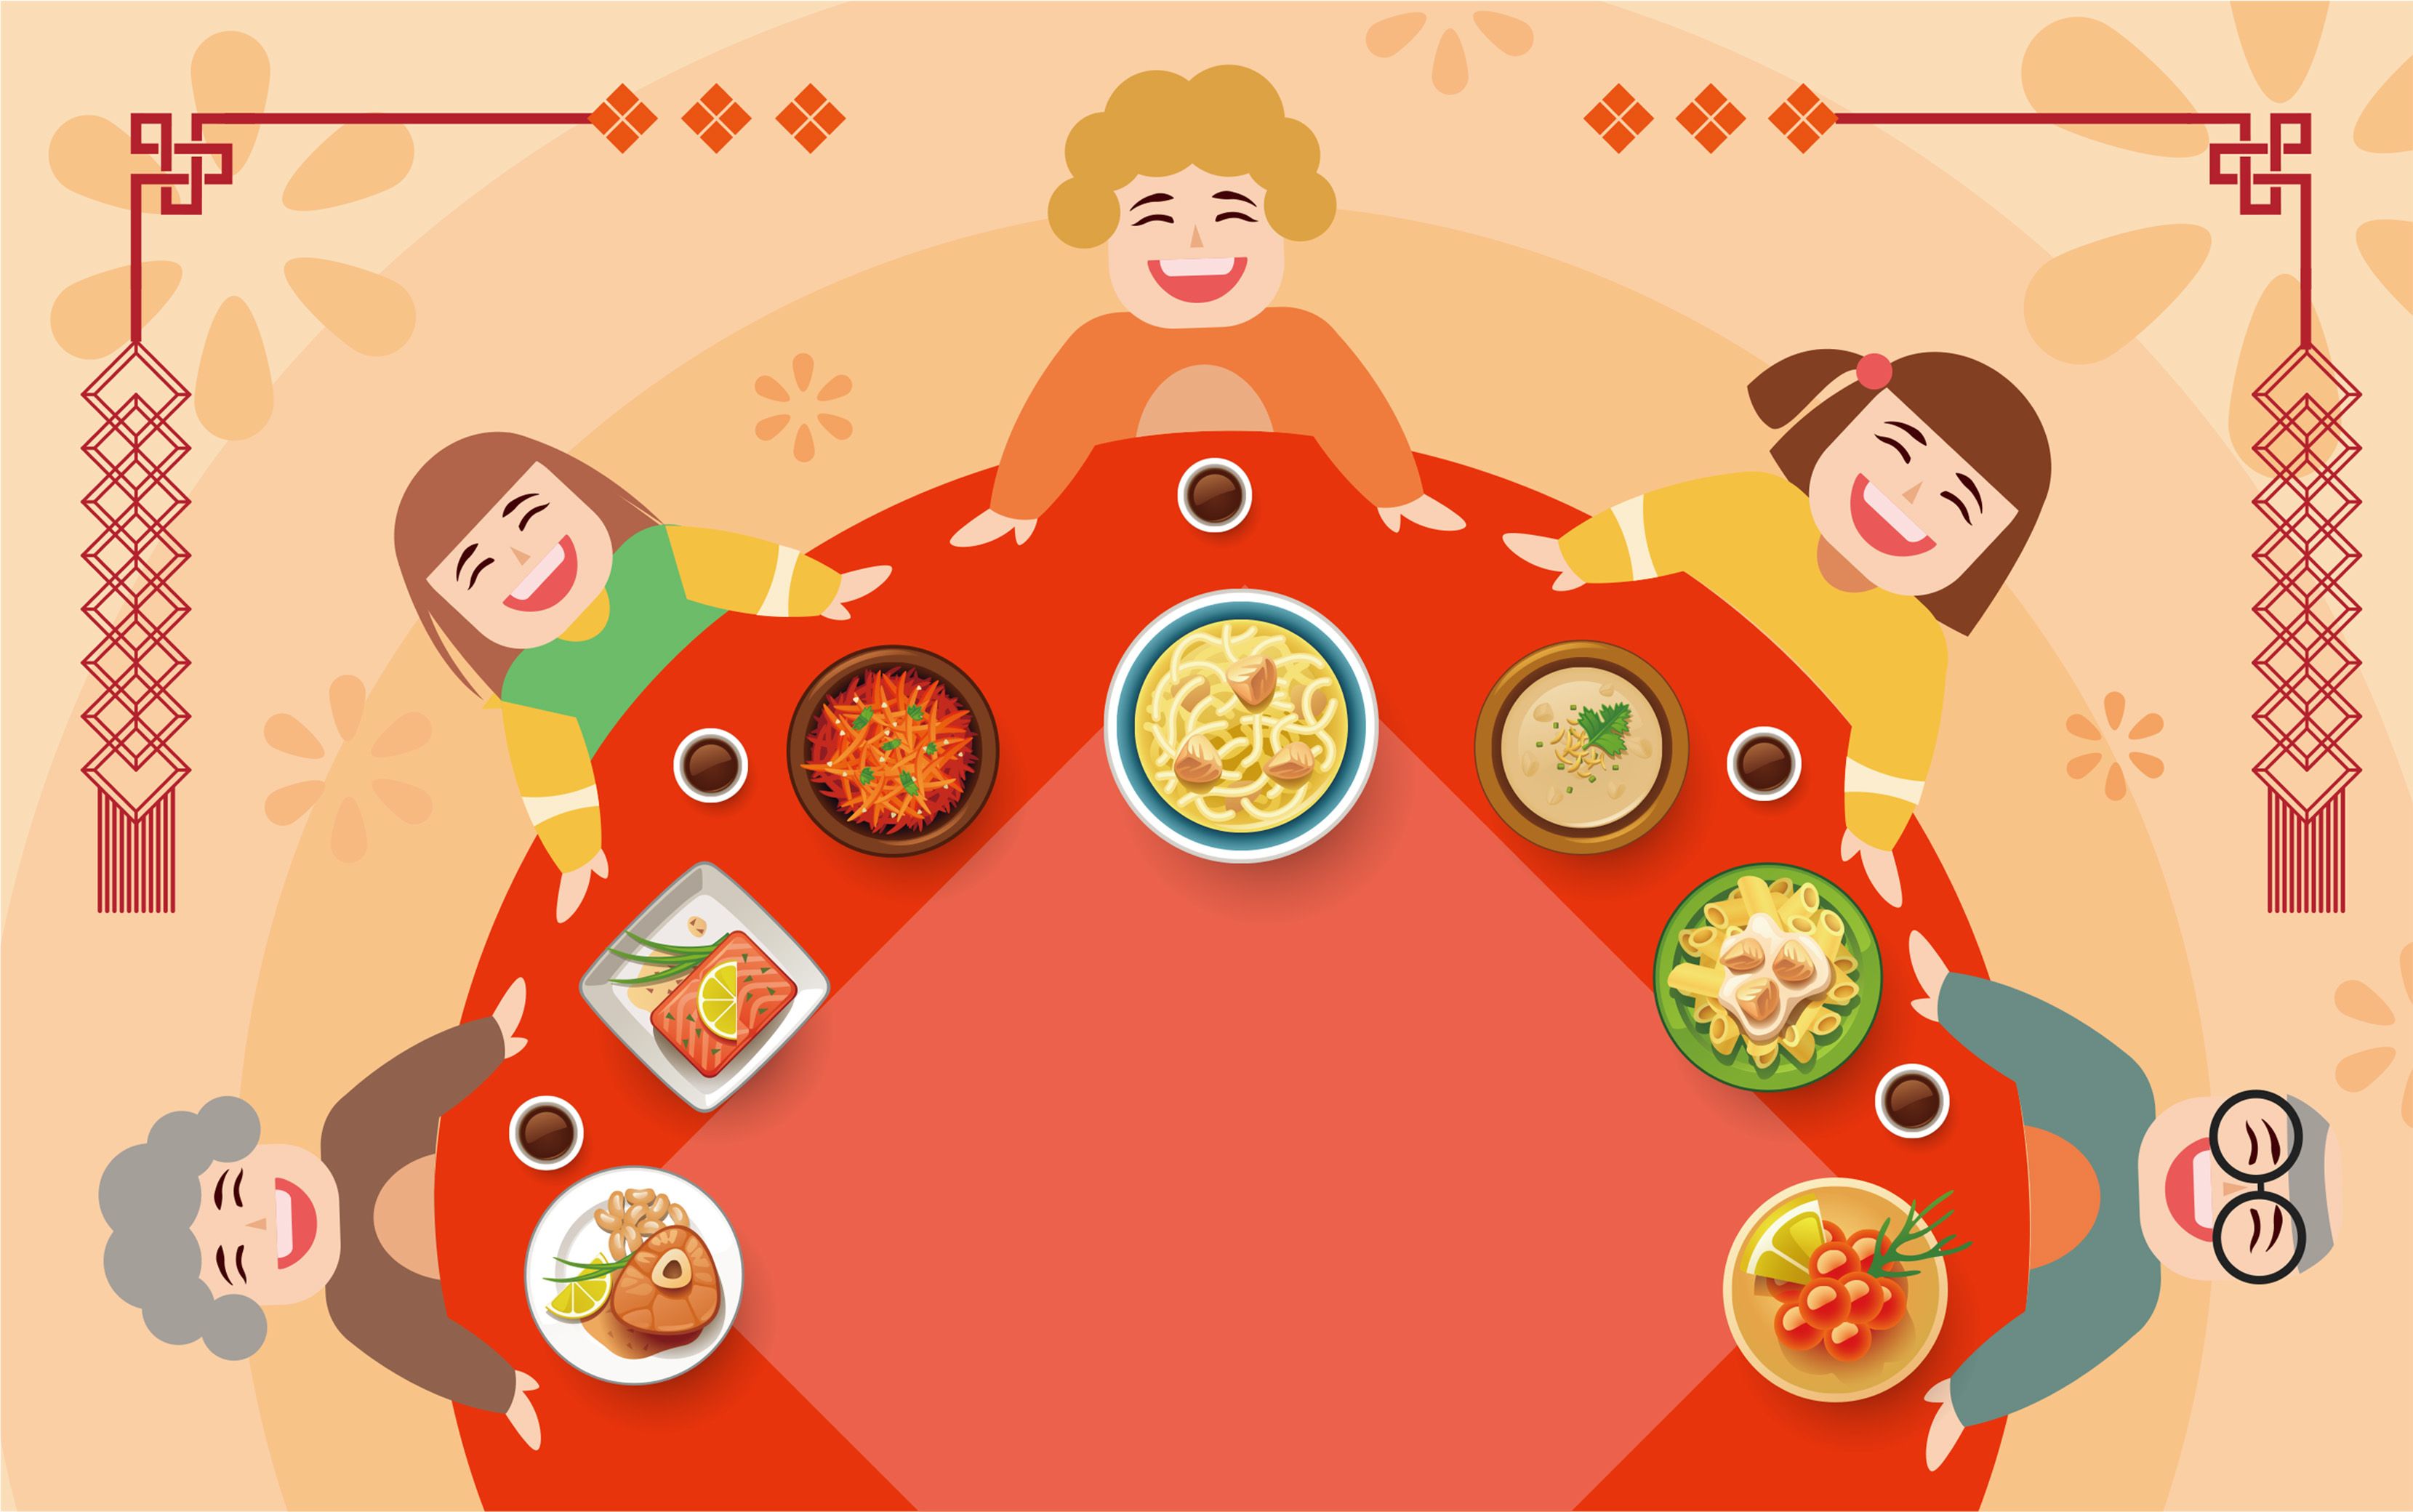 中国人的年夜饭是家人的团圆聚餐,这顿是年尾最丰盛,最重要的一顿晚餐